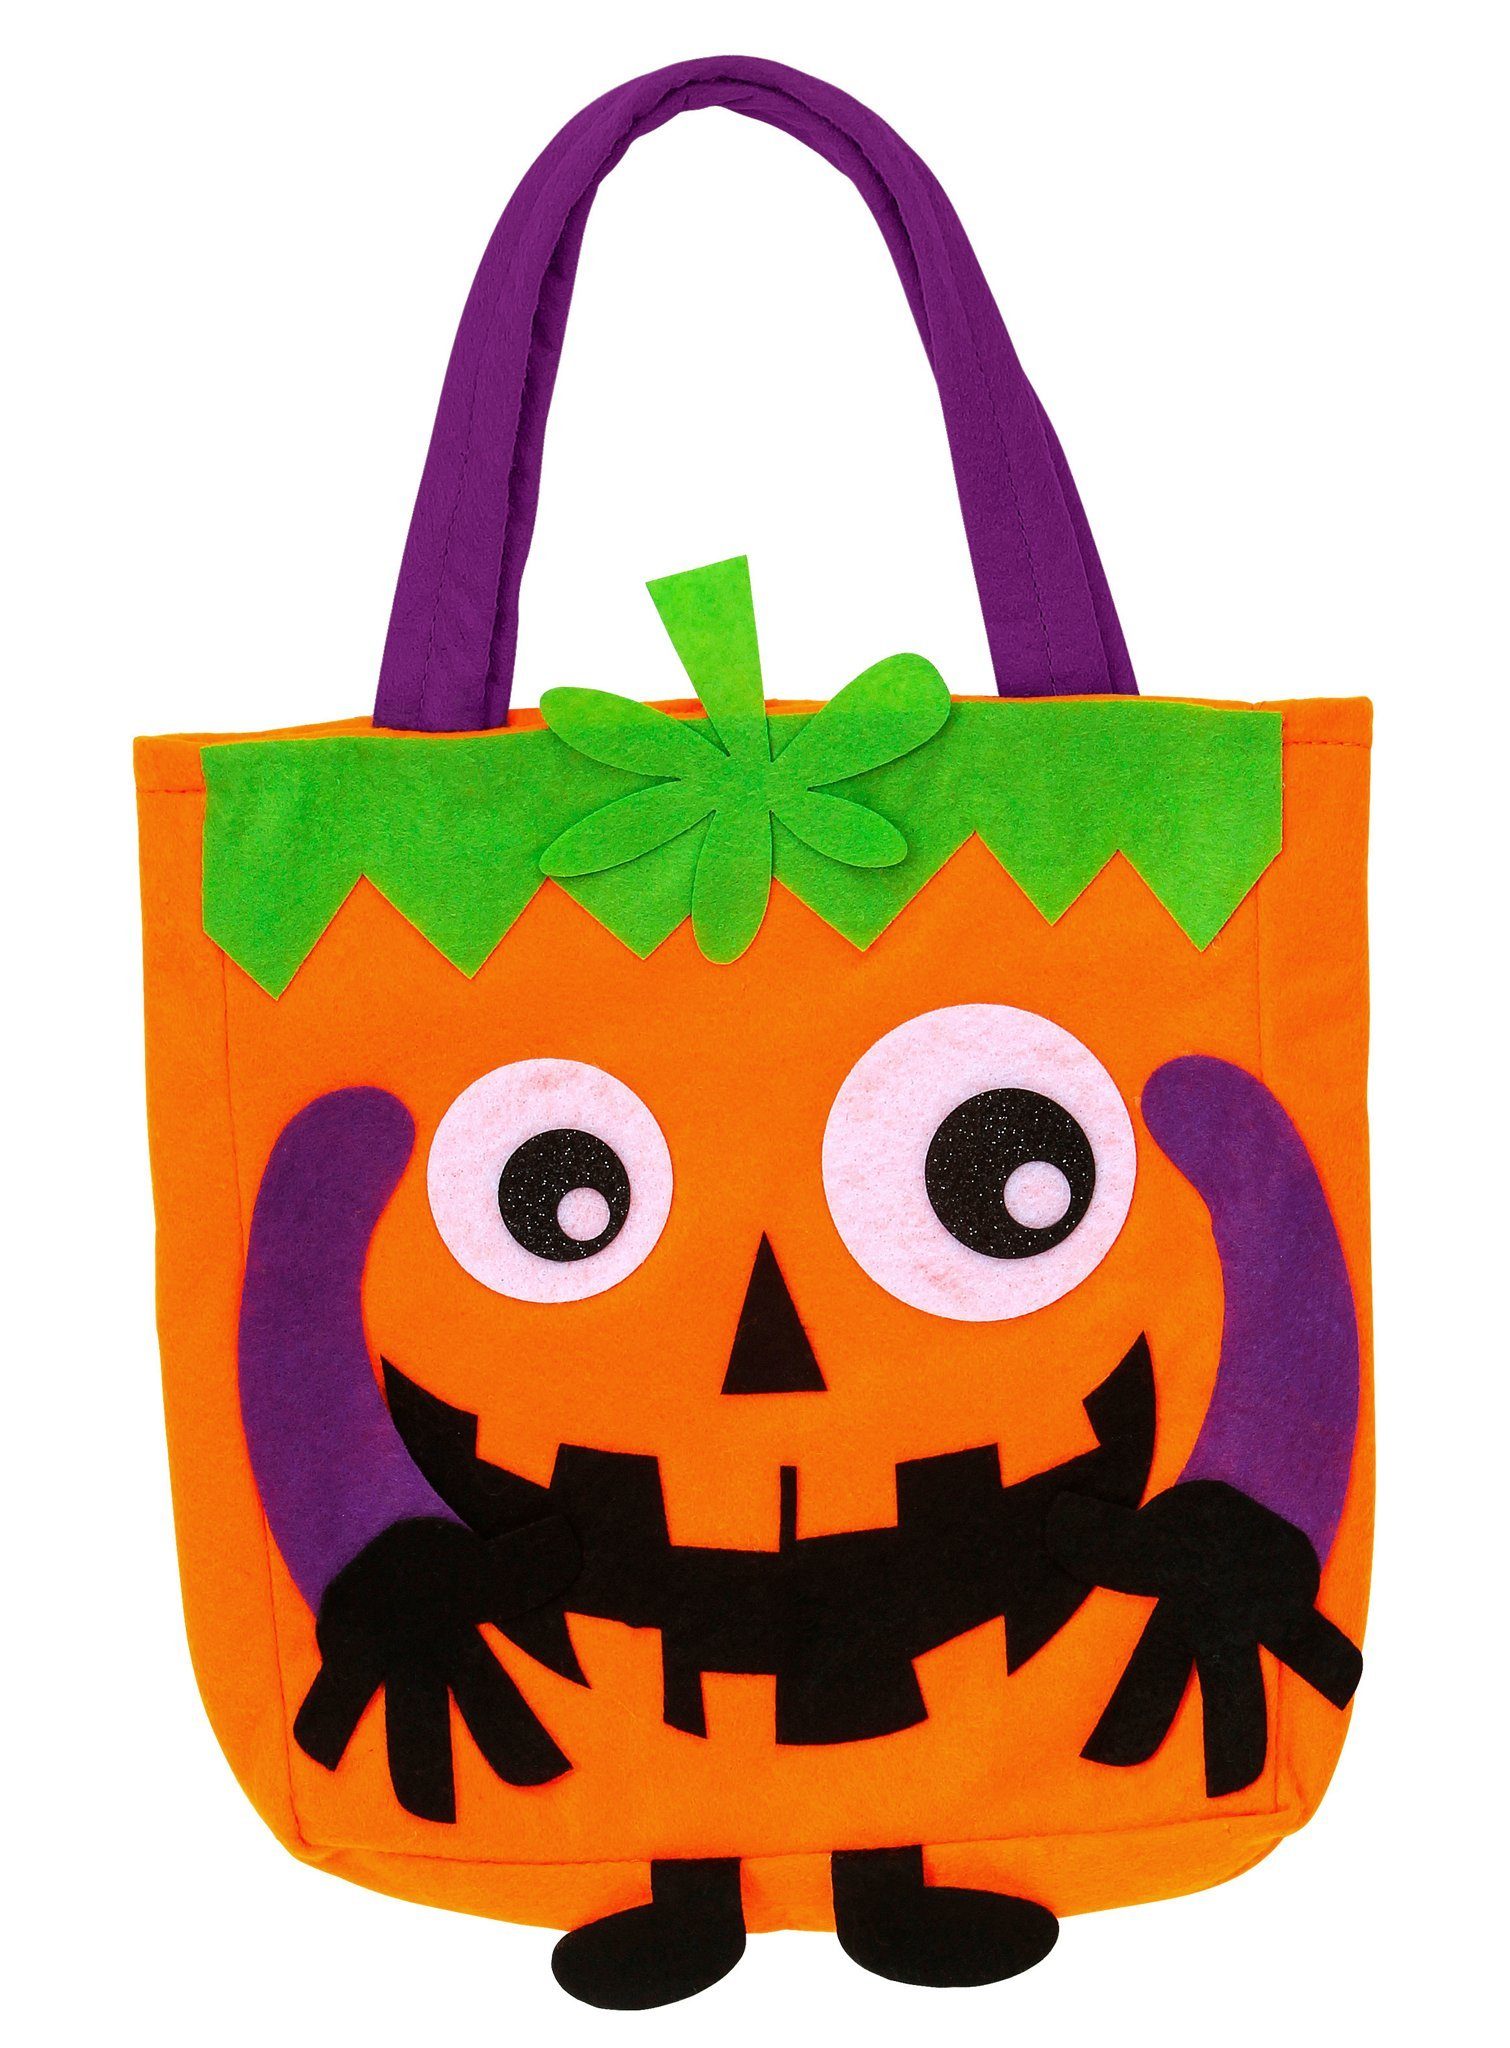 Widdmann Kostüm Süßes oder Saures Tasche, Halloweentasche für alle Deine Süßigkeiten!